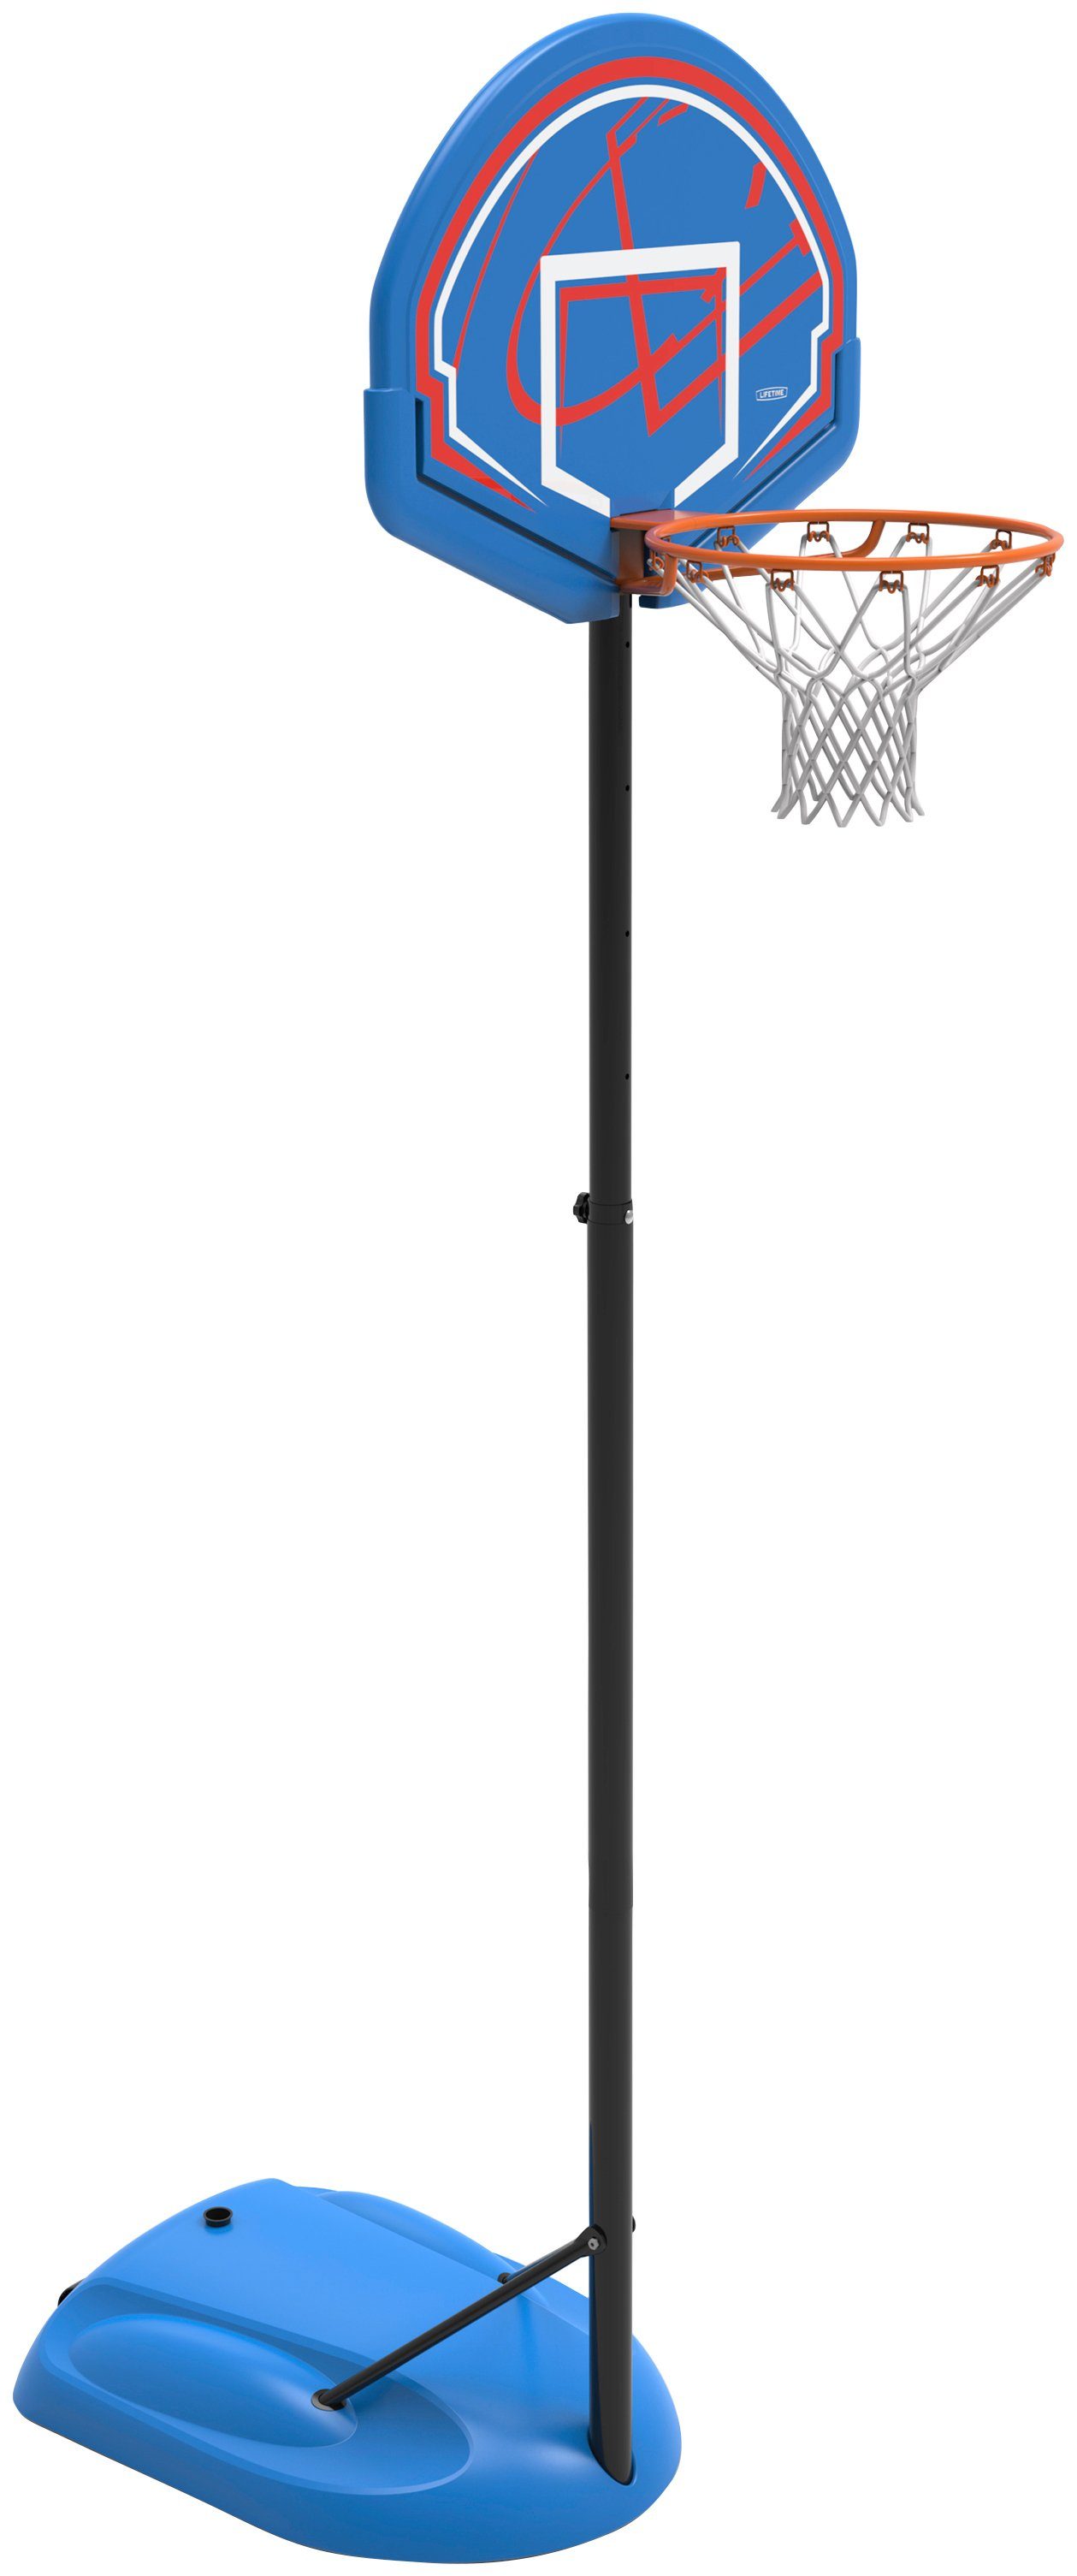 [Zu einem schockierenden Preis erhältlich!] Basketballkorb blau höhenverstellbar Nebraska, 50NRTH